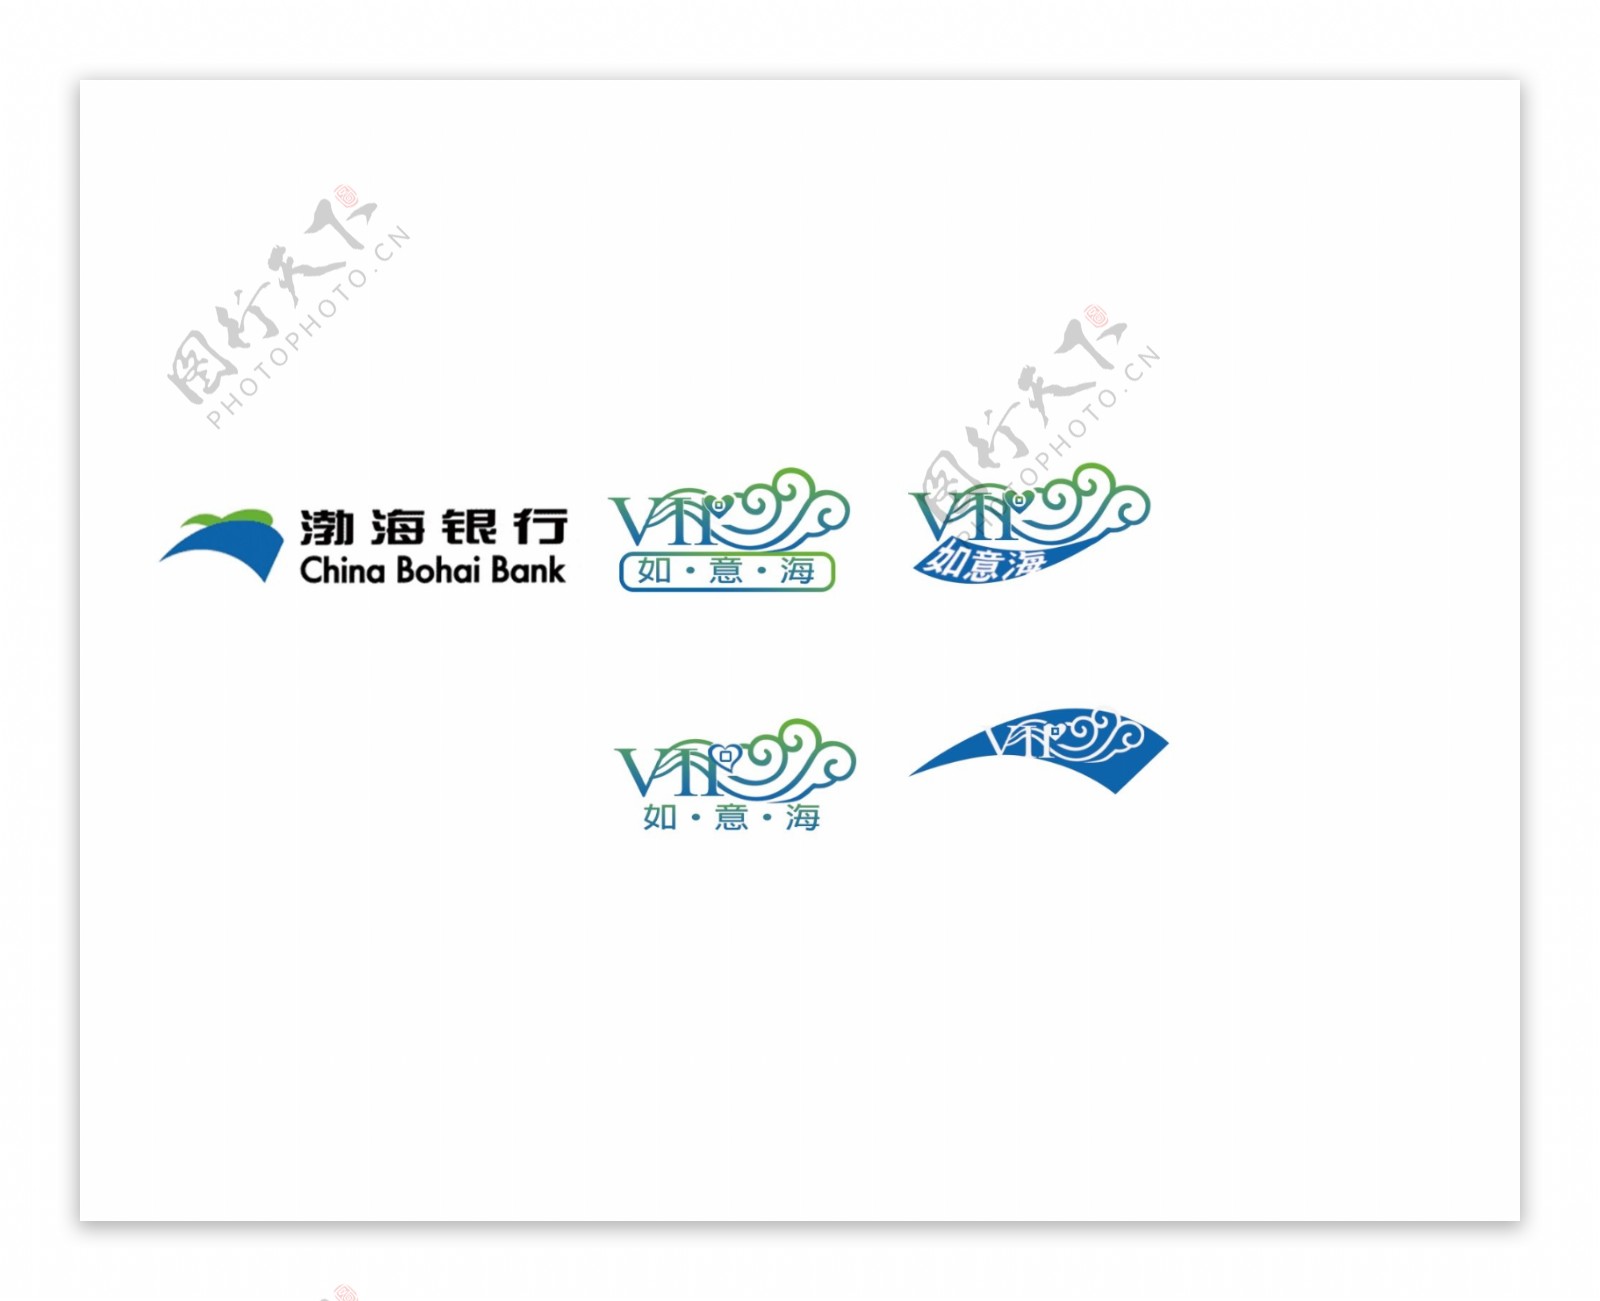 渤海银行vip服务logo设计